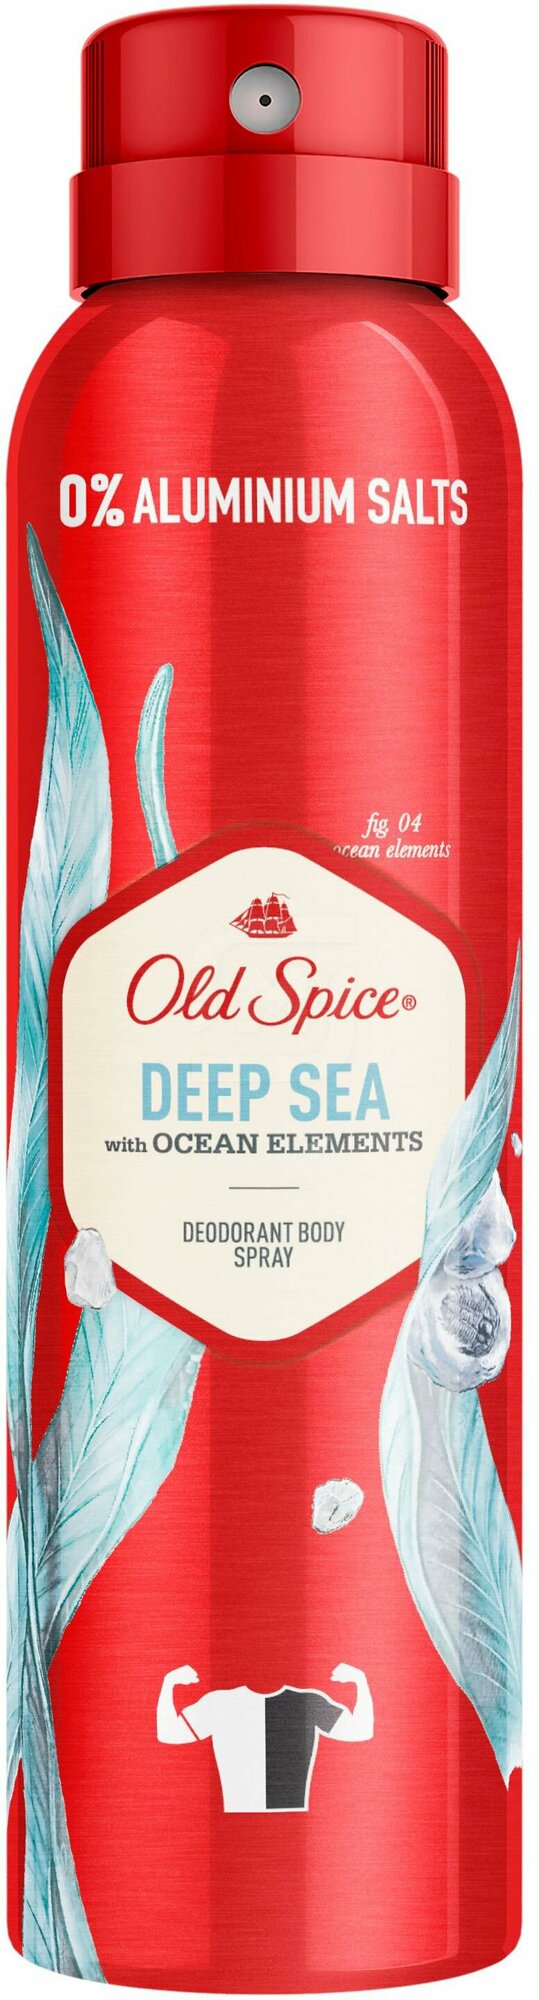 Дезодорант Old Spice Deep Sea